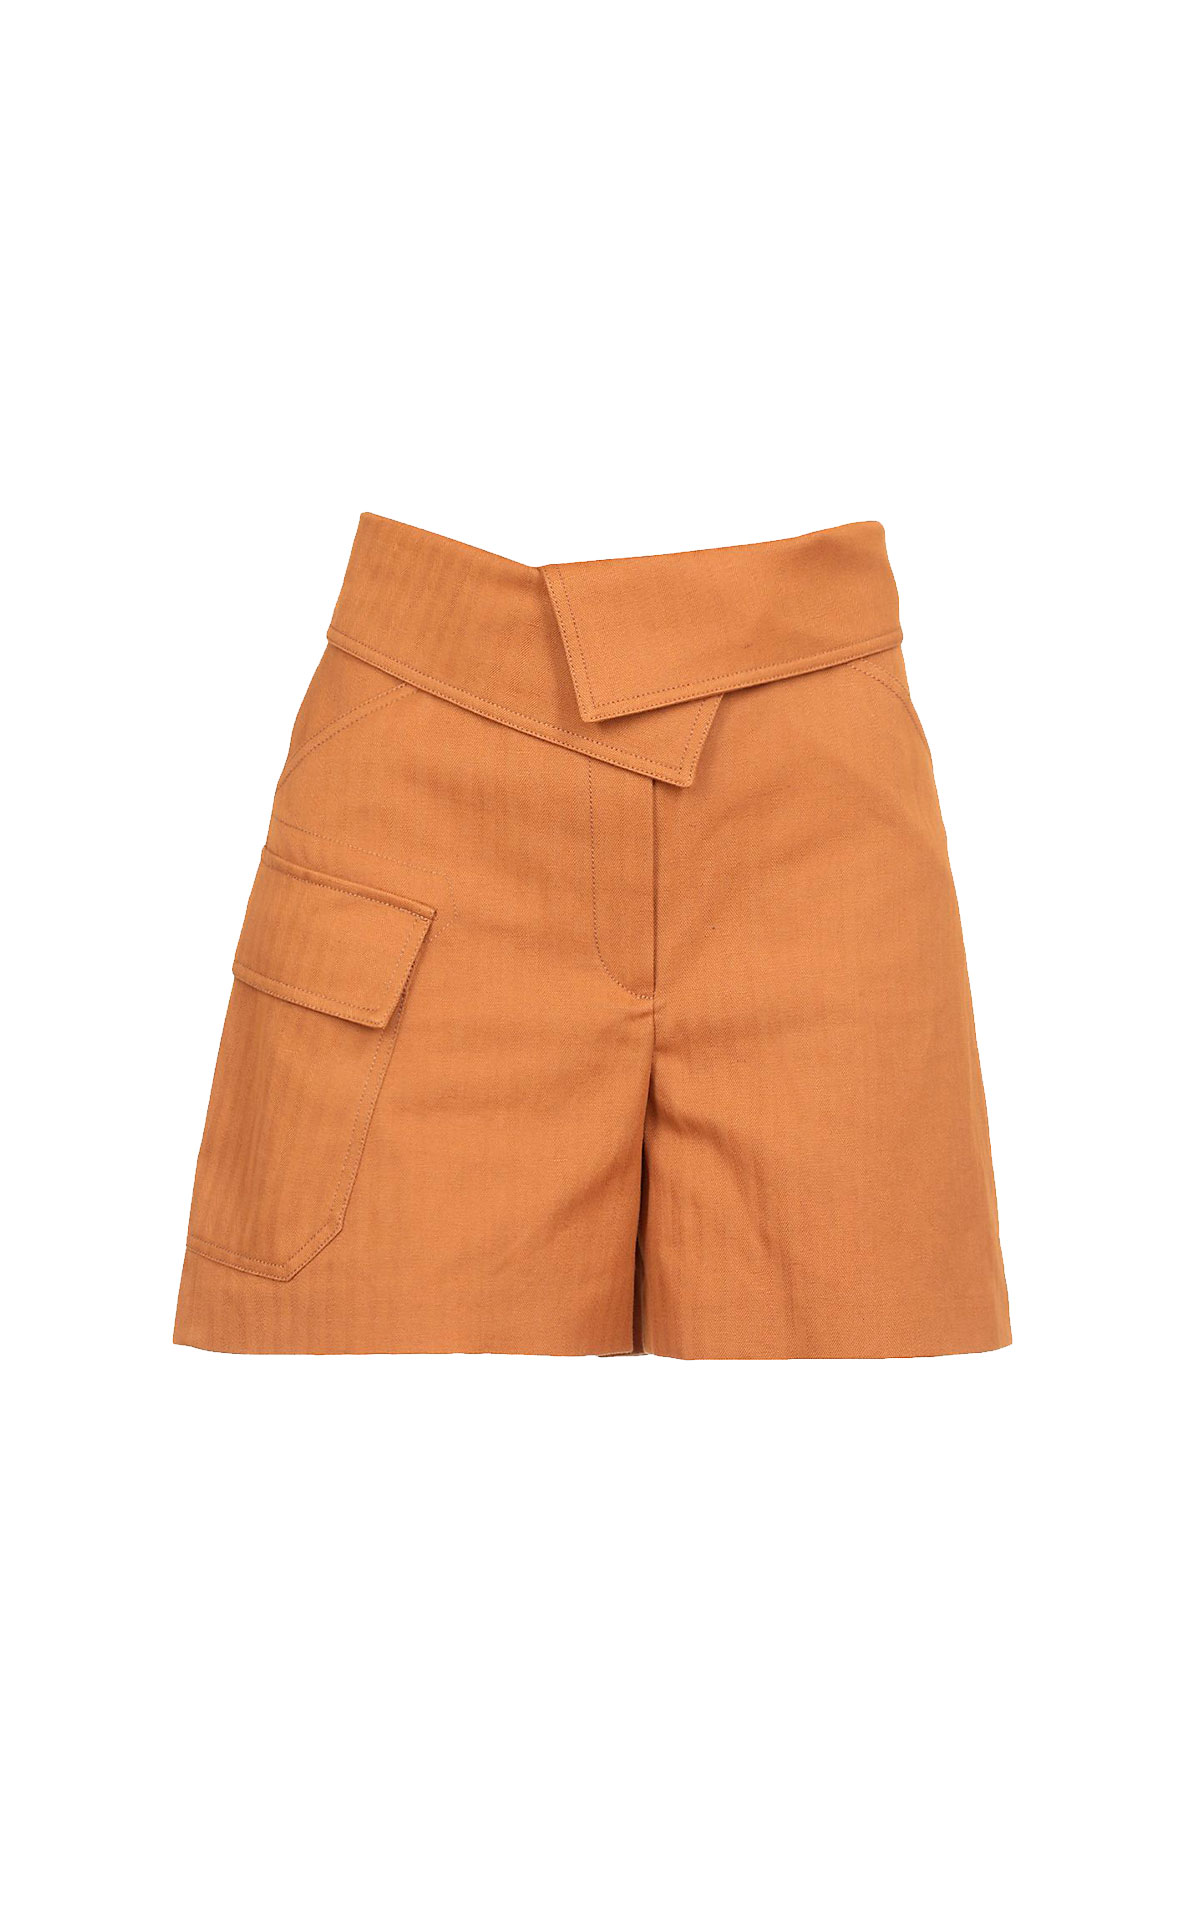 Orange shorts Kenzo